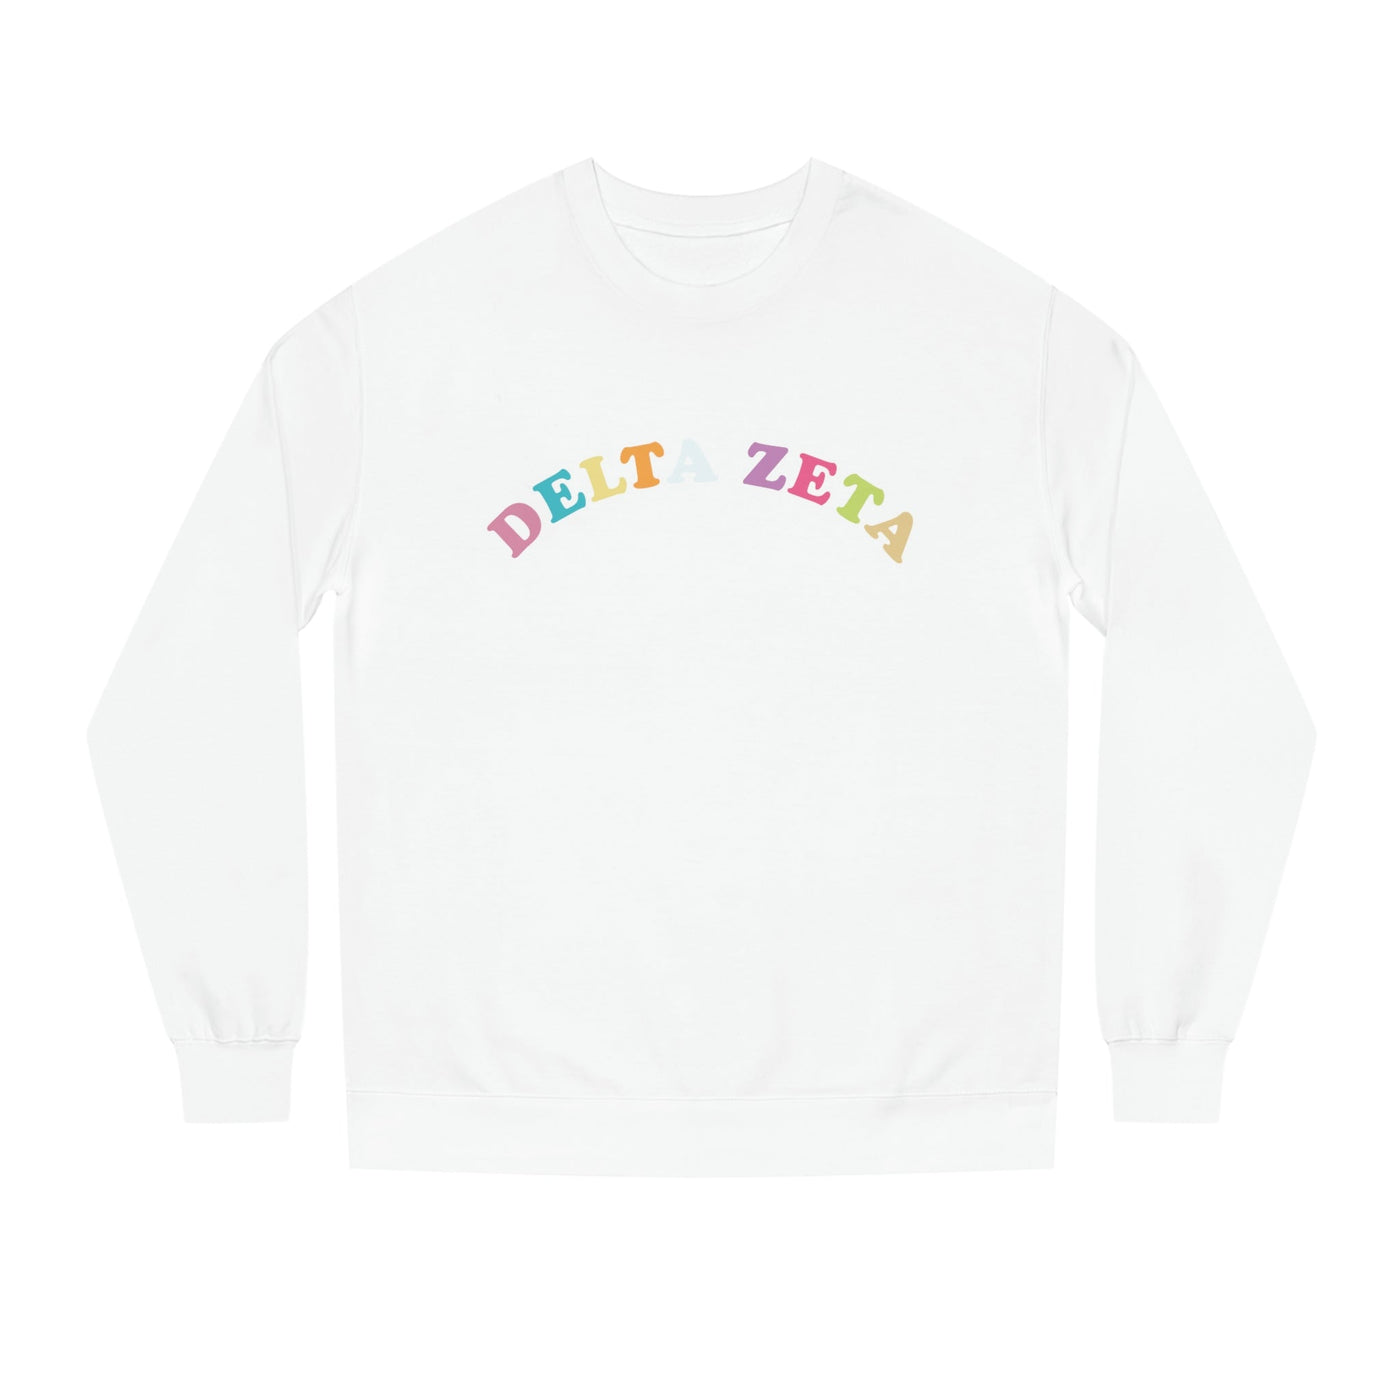 Delta Zeta Colorful Text Cute Delta Zeta Sorority Crewneck Sweatshirt